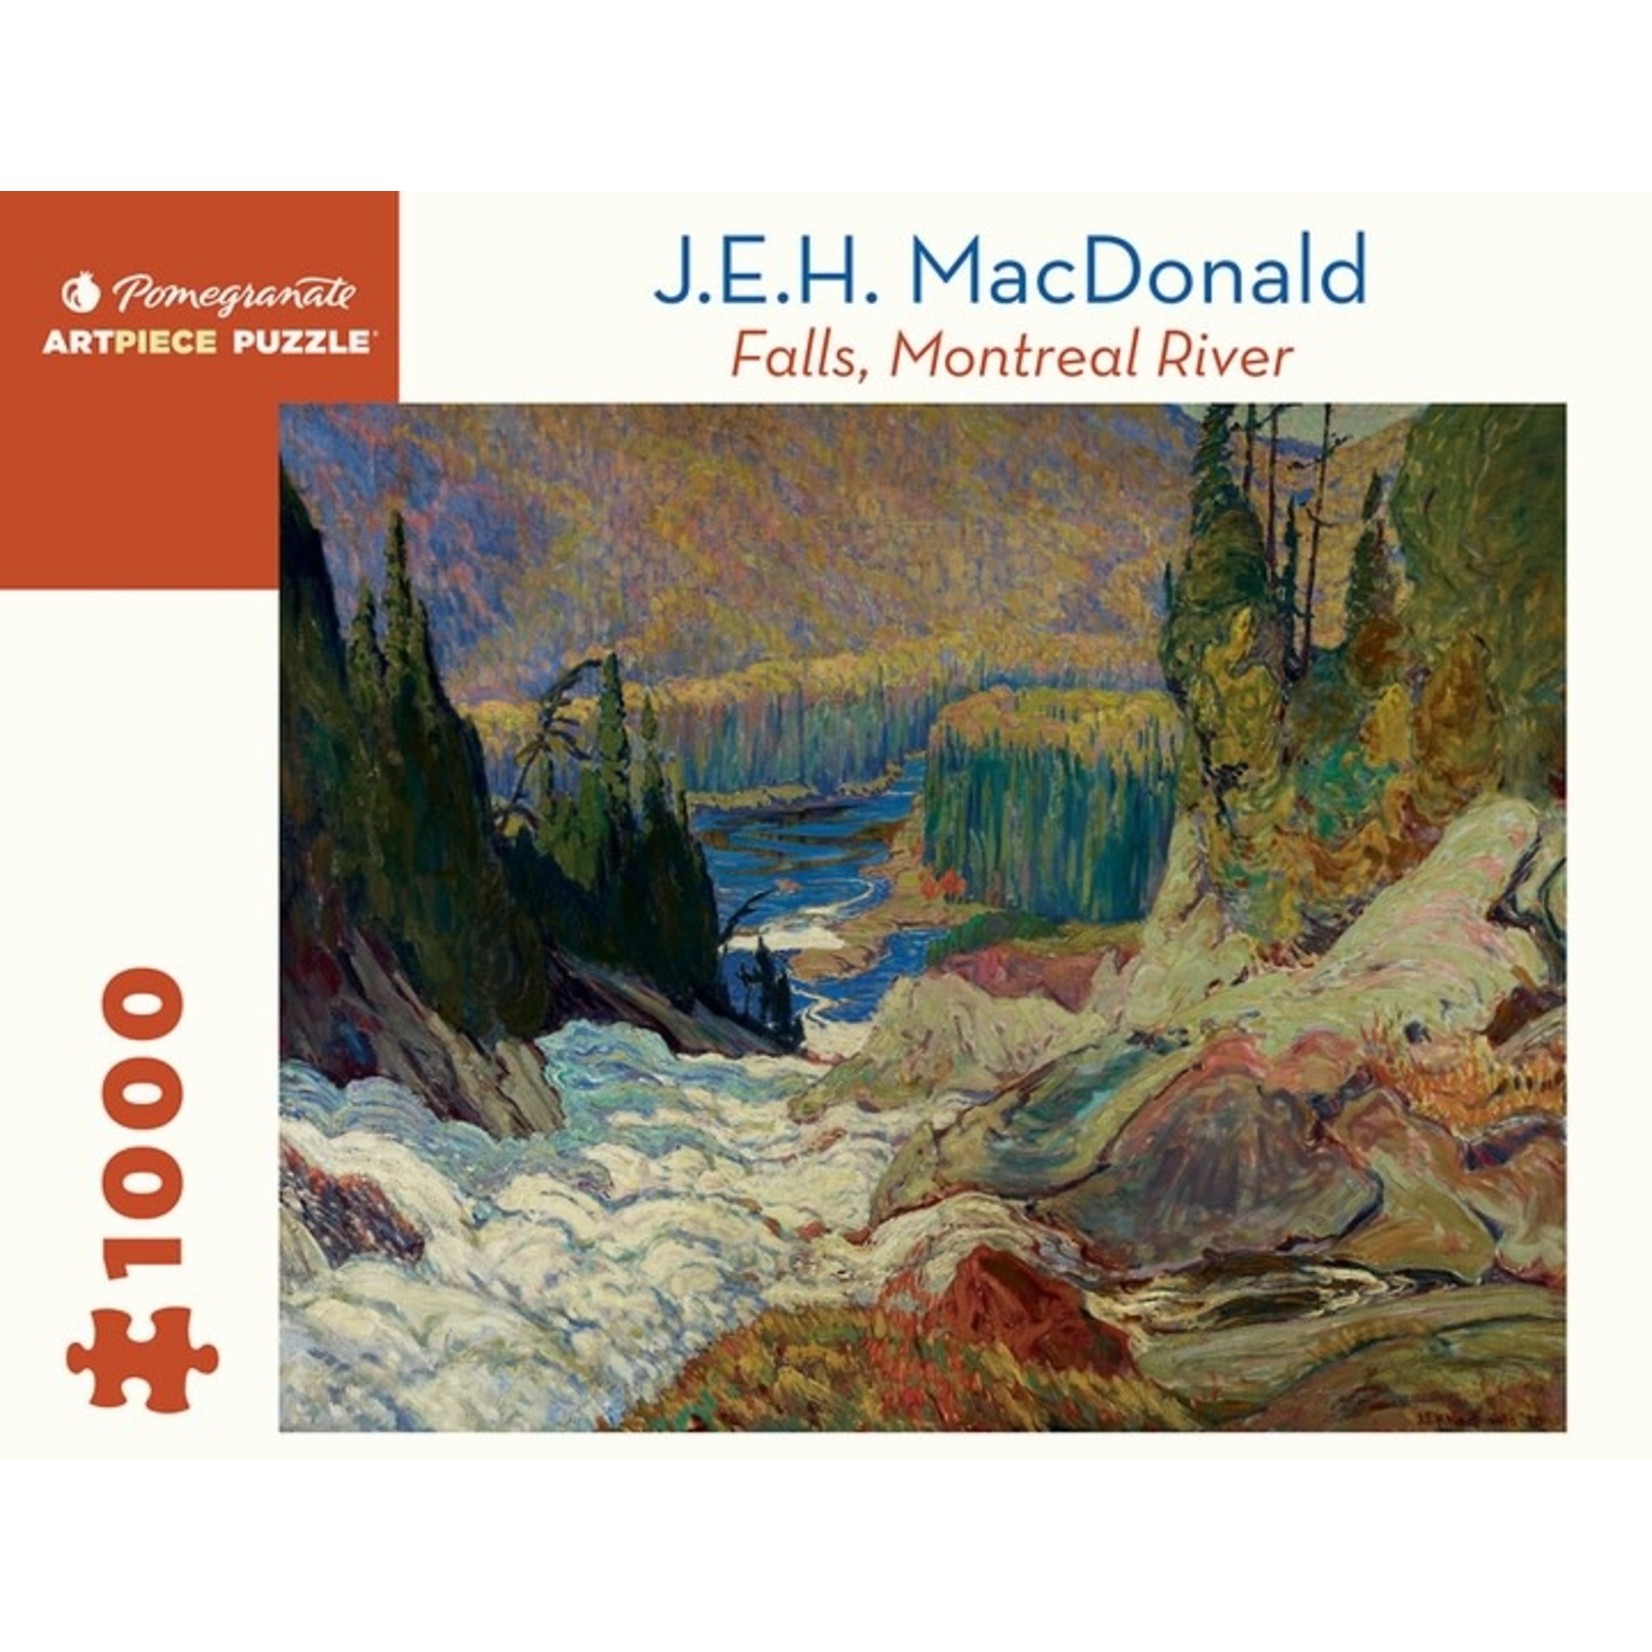 J.E.H. MacDonald: Falls, Montreal River 1000pc